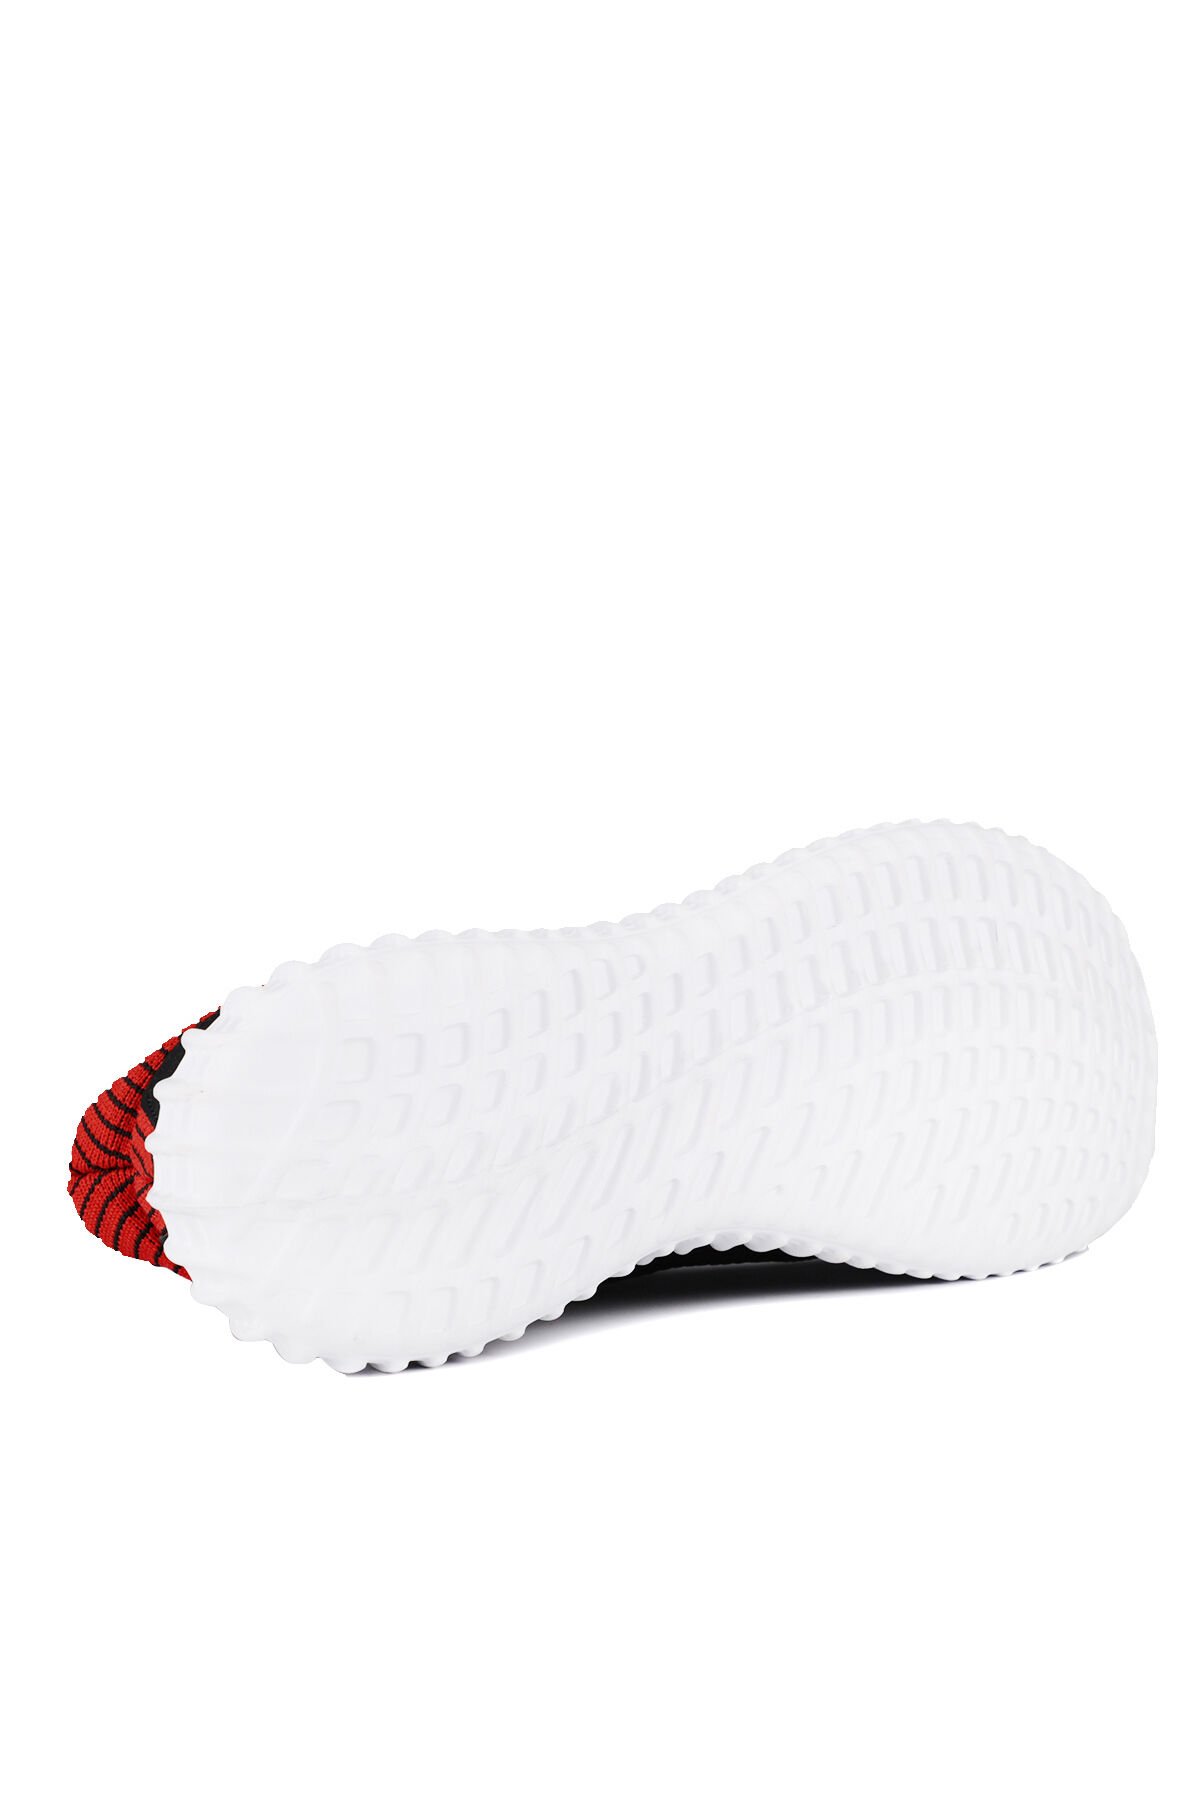 Slazenger ATOMIC Sneaker Erkek Ayakkabı Siyah / Kırmızı - Thumbnail